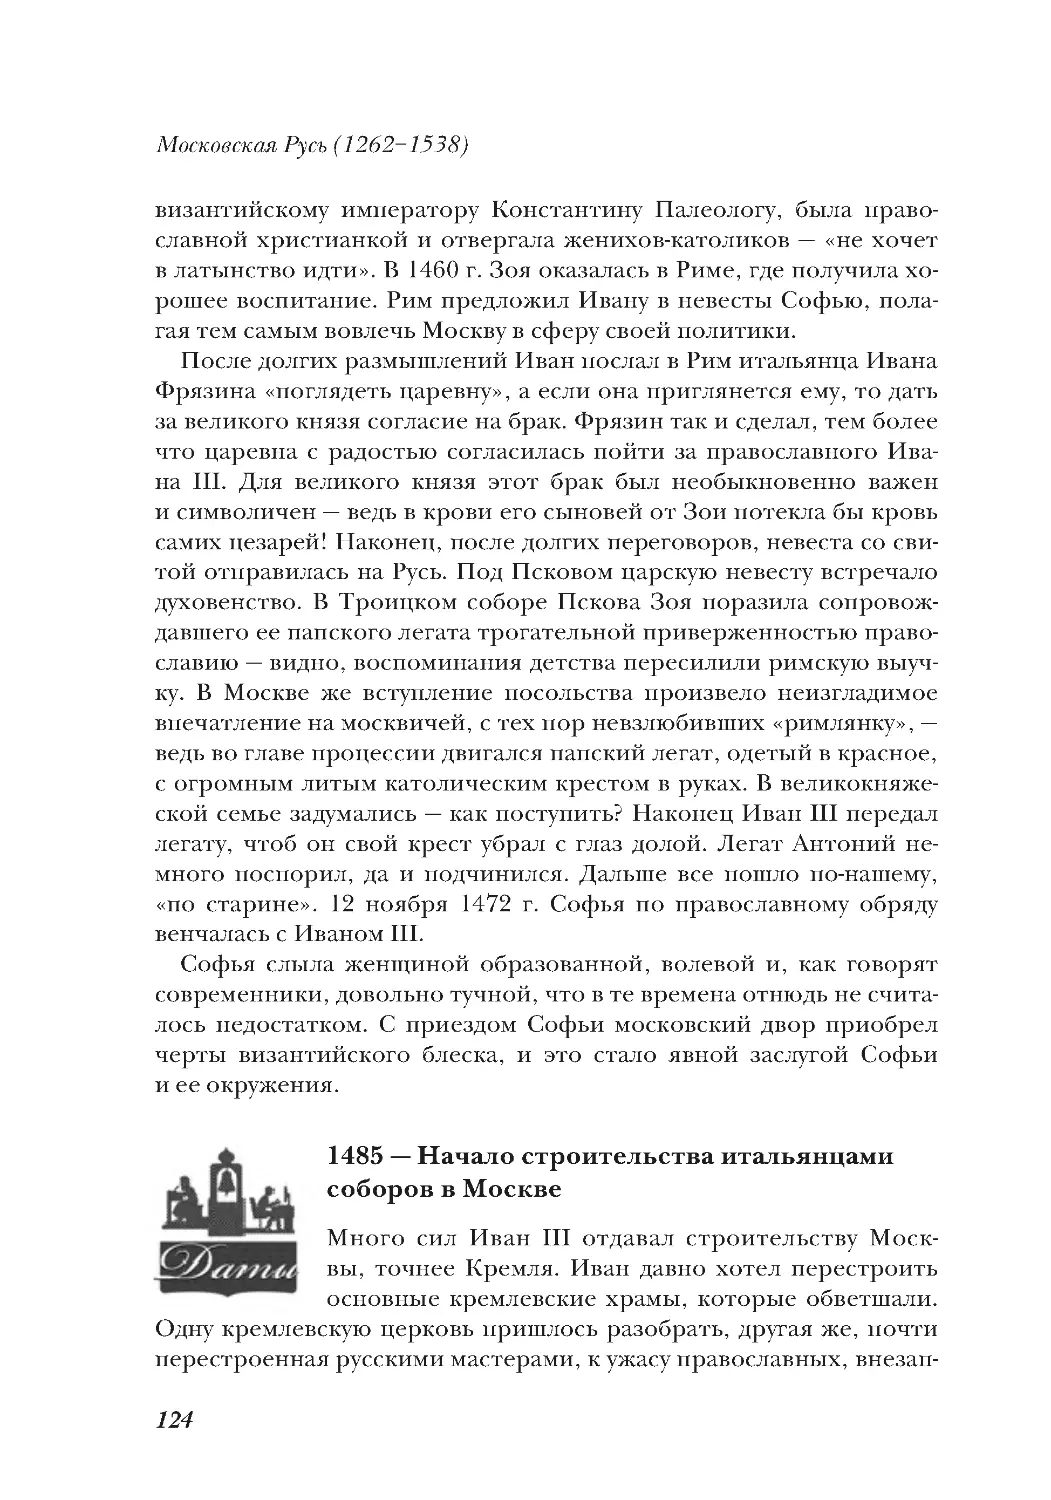 1485 — Начало строительства итальянцами соборов в Москве